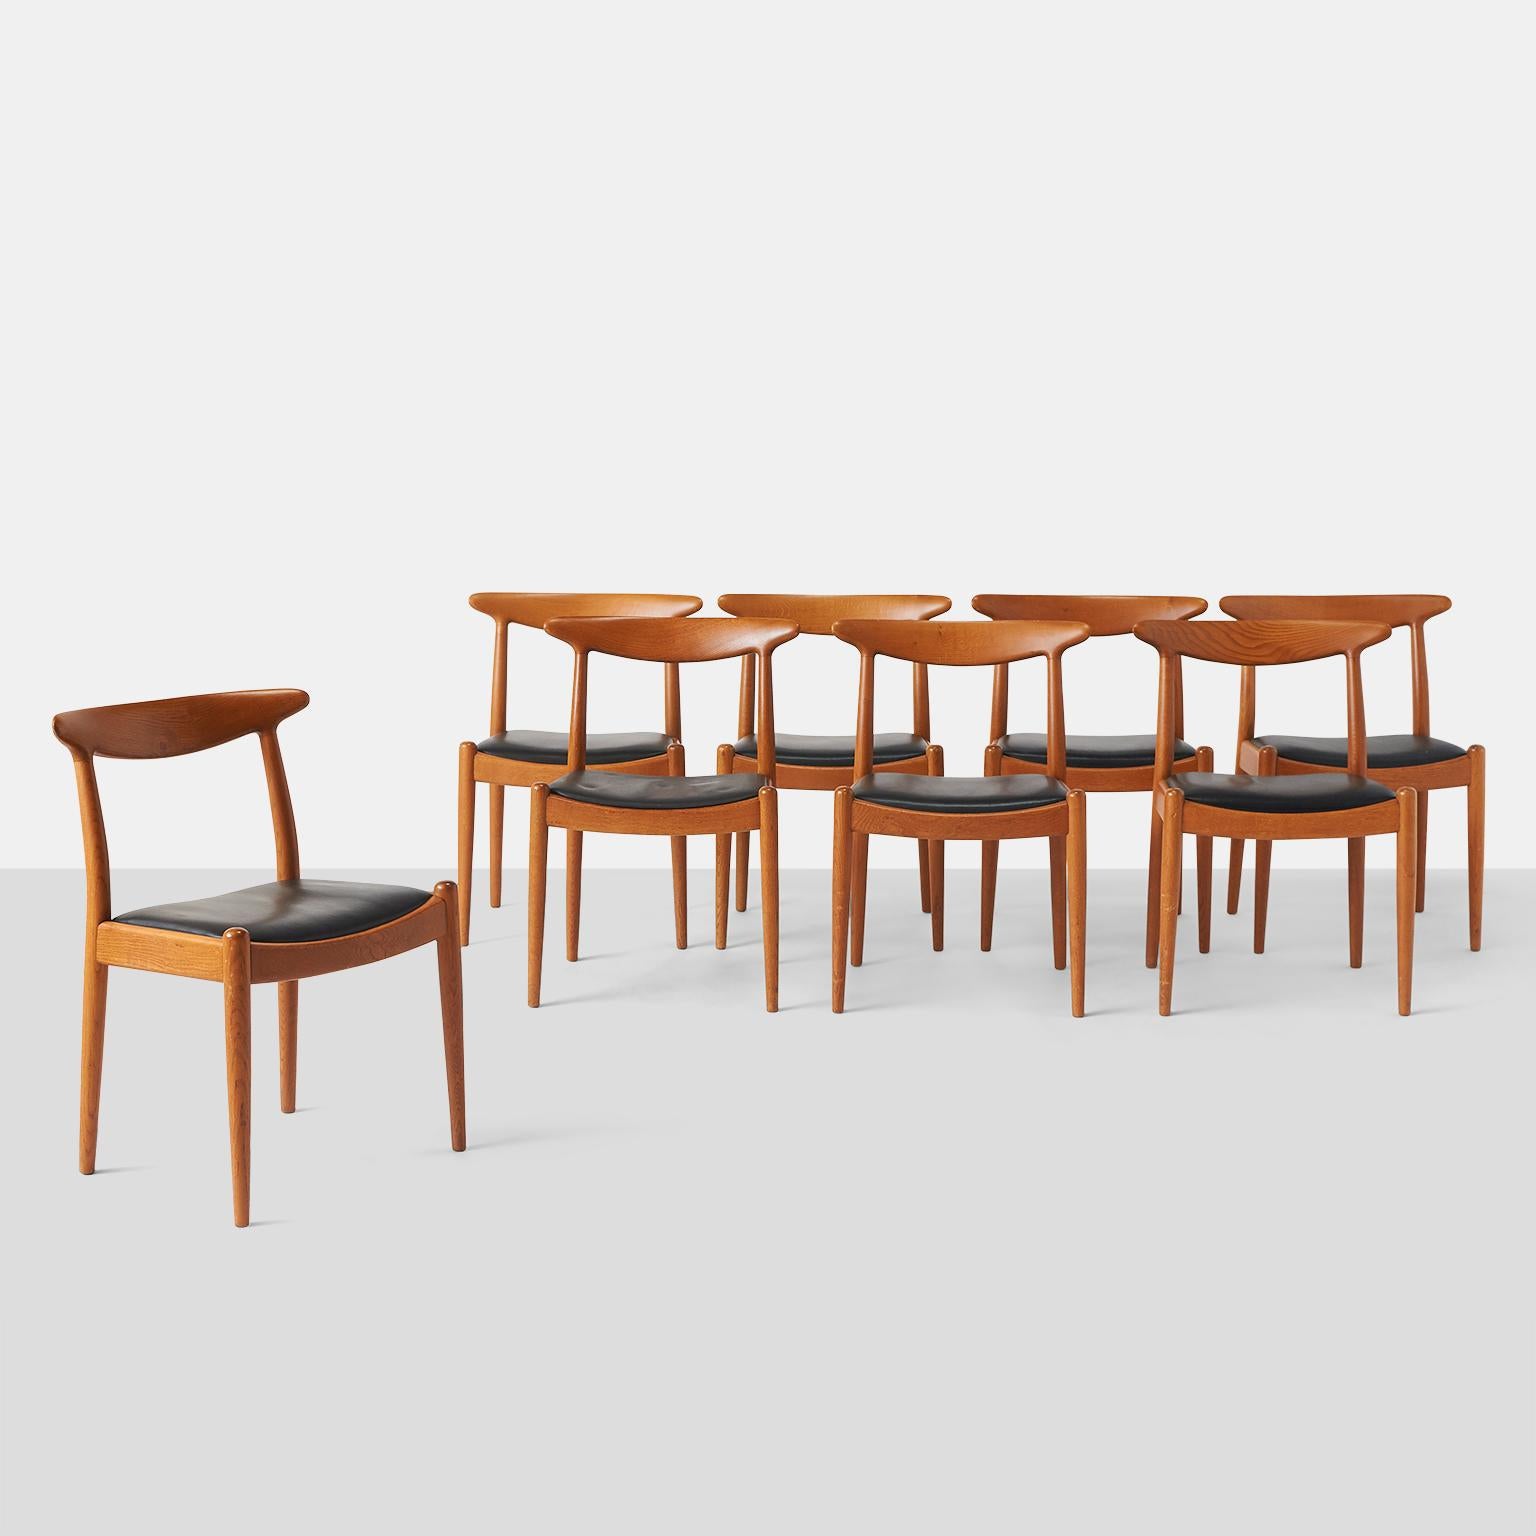 Ein Satz von acht W2-Esszimmerstühlen aus Eichenholz mit schwarz gepolstertem Sitz und konischen Beinen.

Gestempelt C M Madsens, hergestellt in Dänemark, Hans J Wegner.